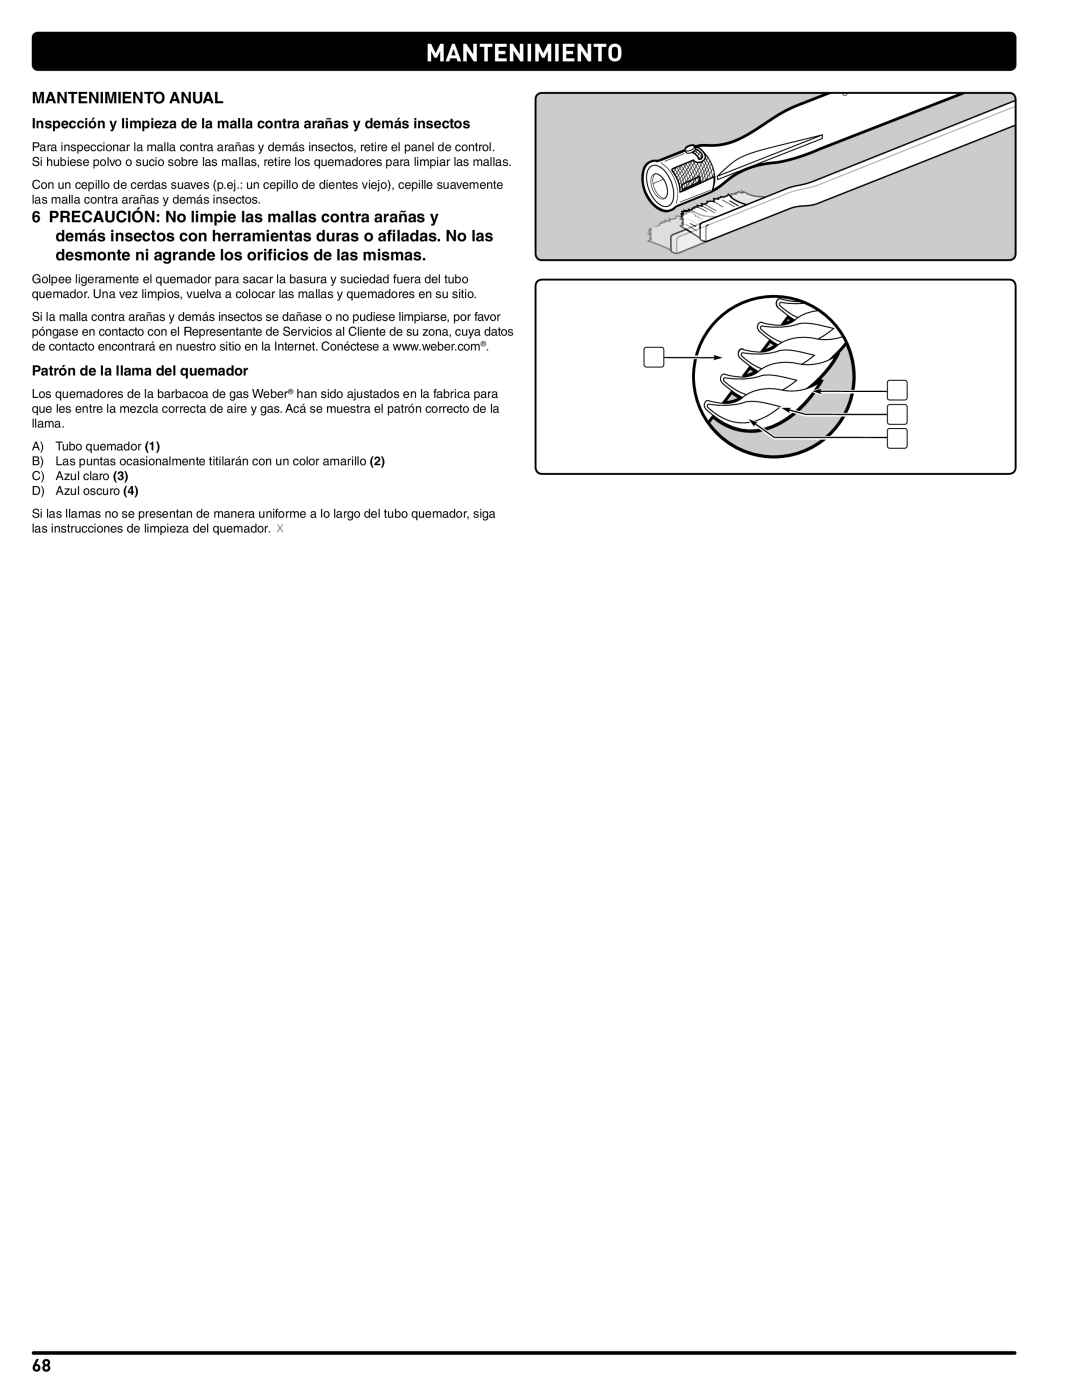 Weber Weber, 660- LP manual Mantenimiento Anual, Patrón de la llama del quemador 